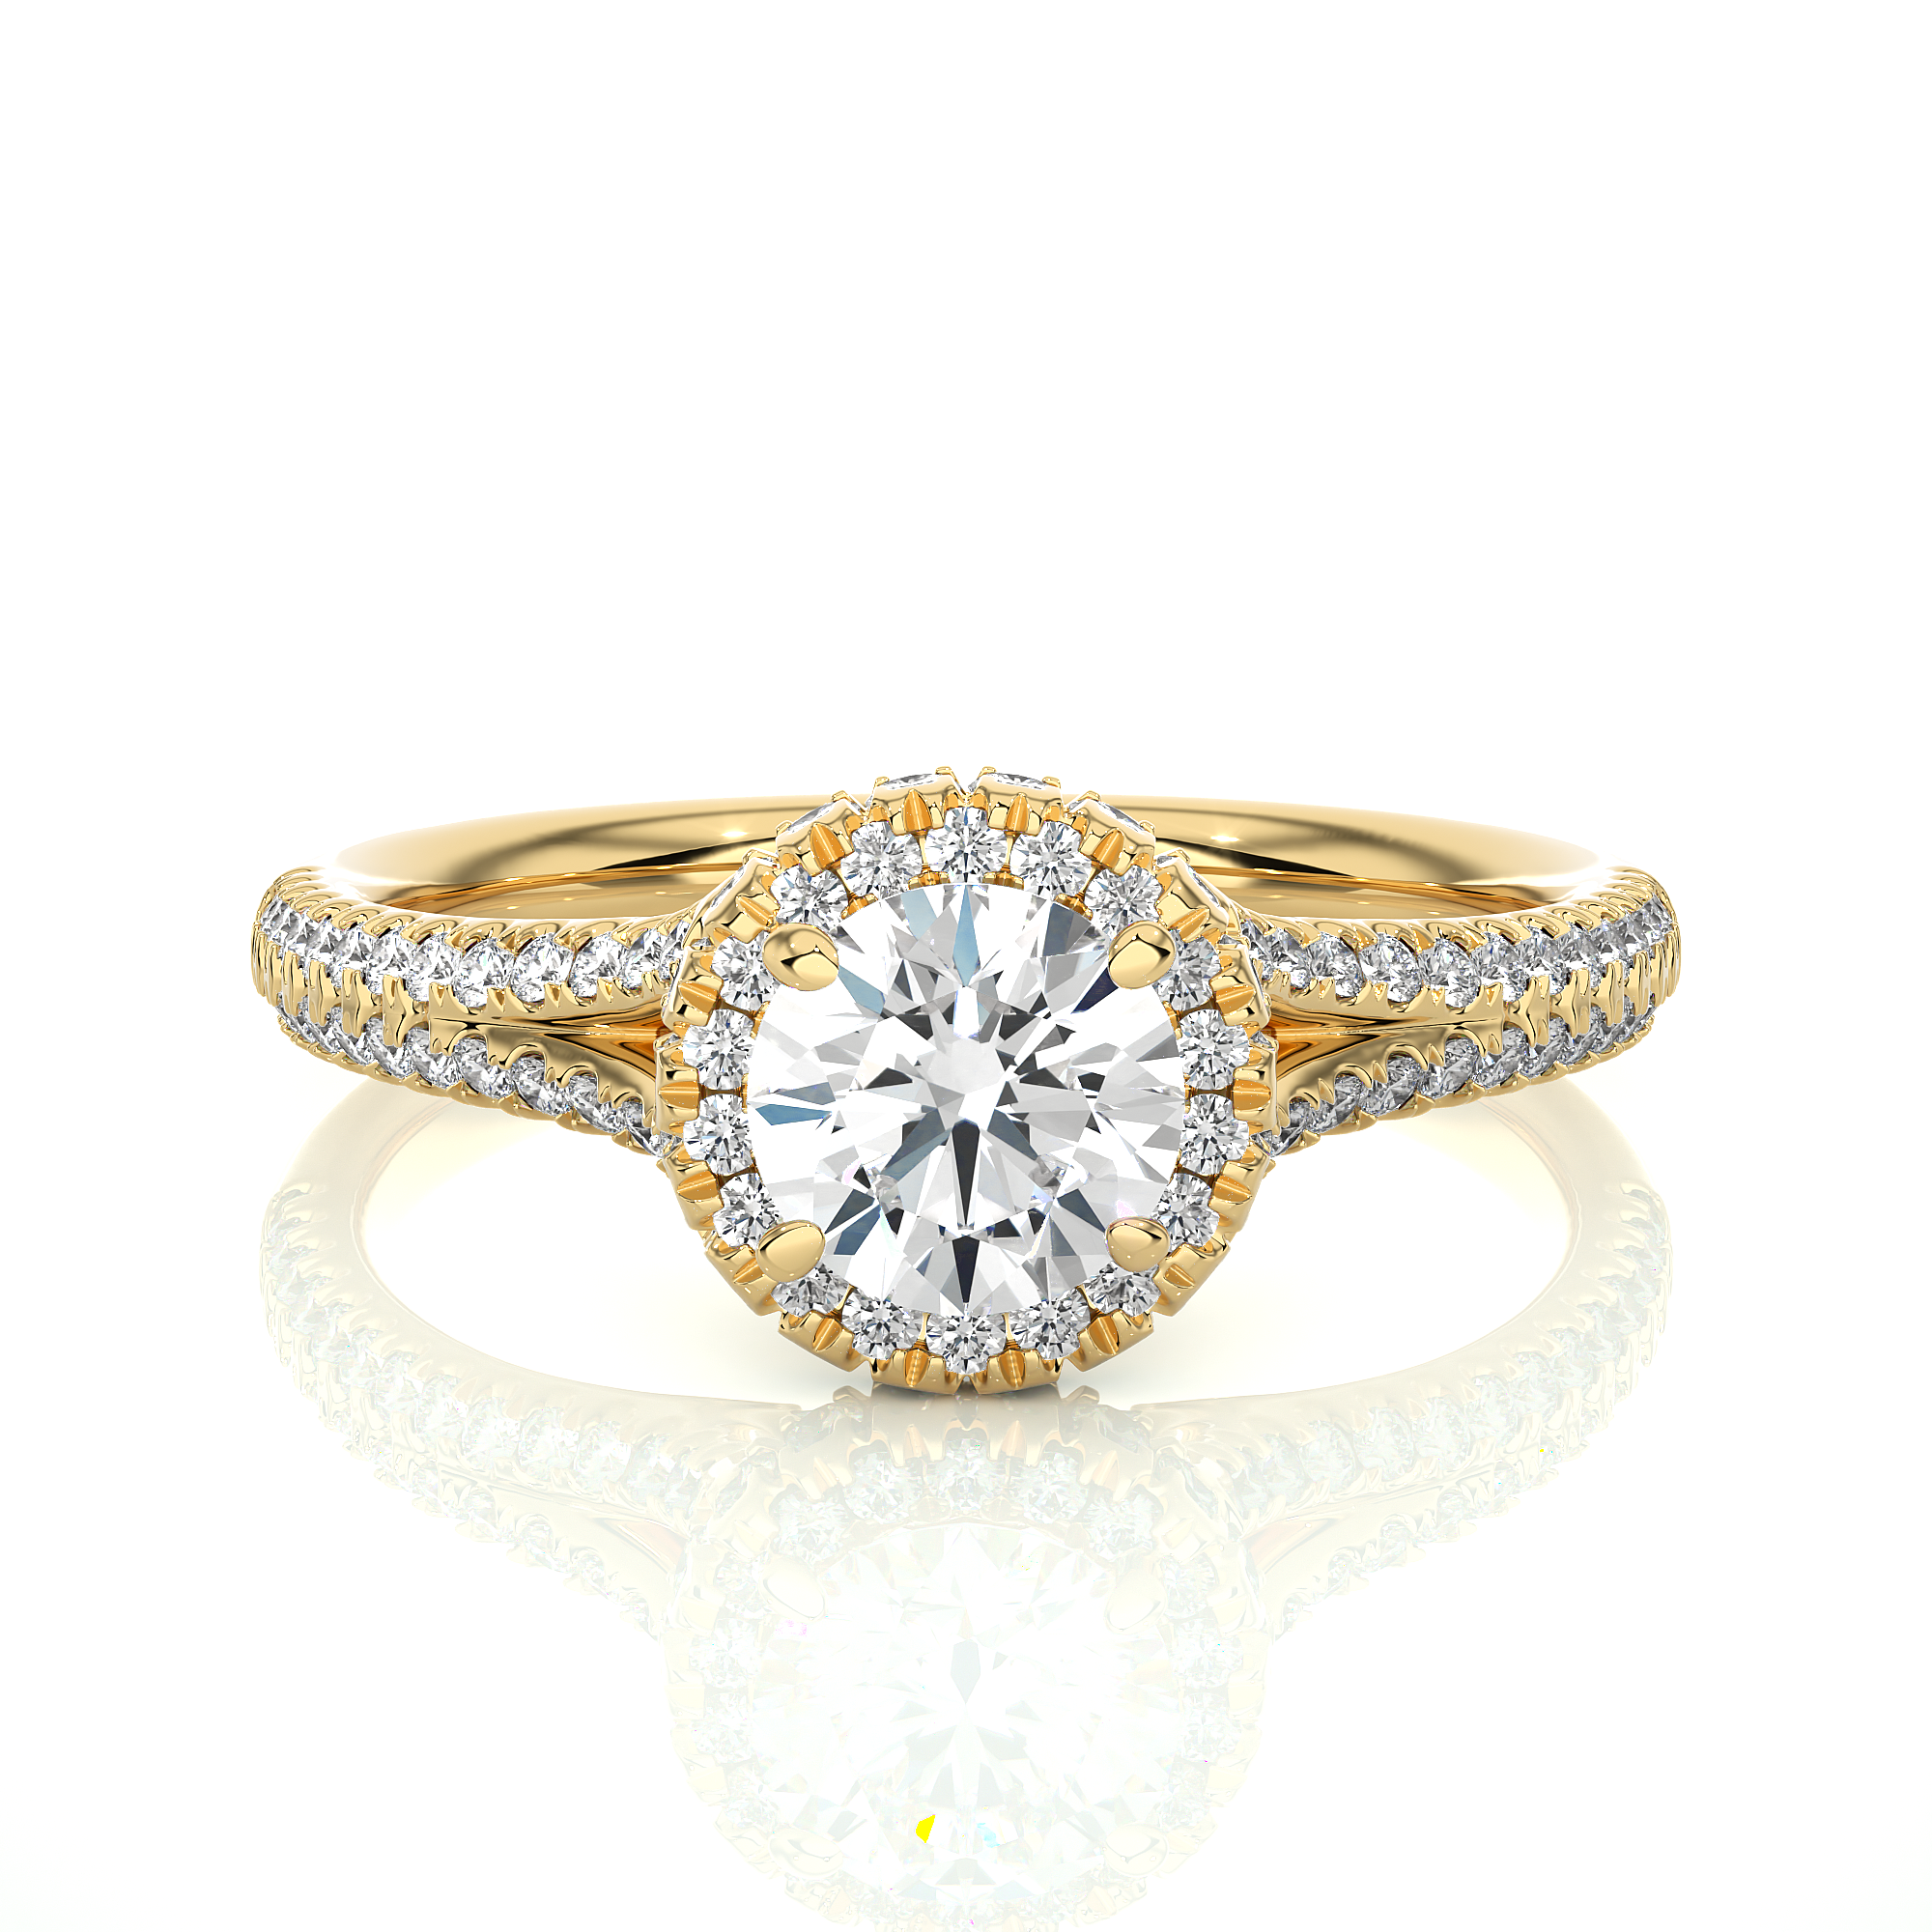 Elan Ring - Solitaire Diamond Ring